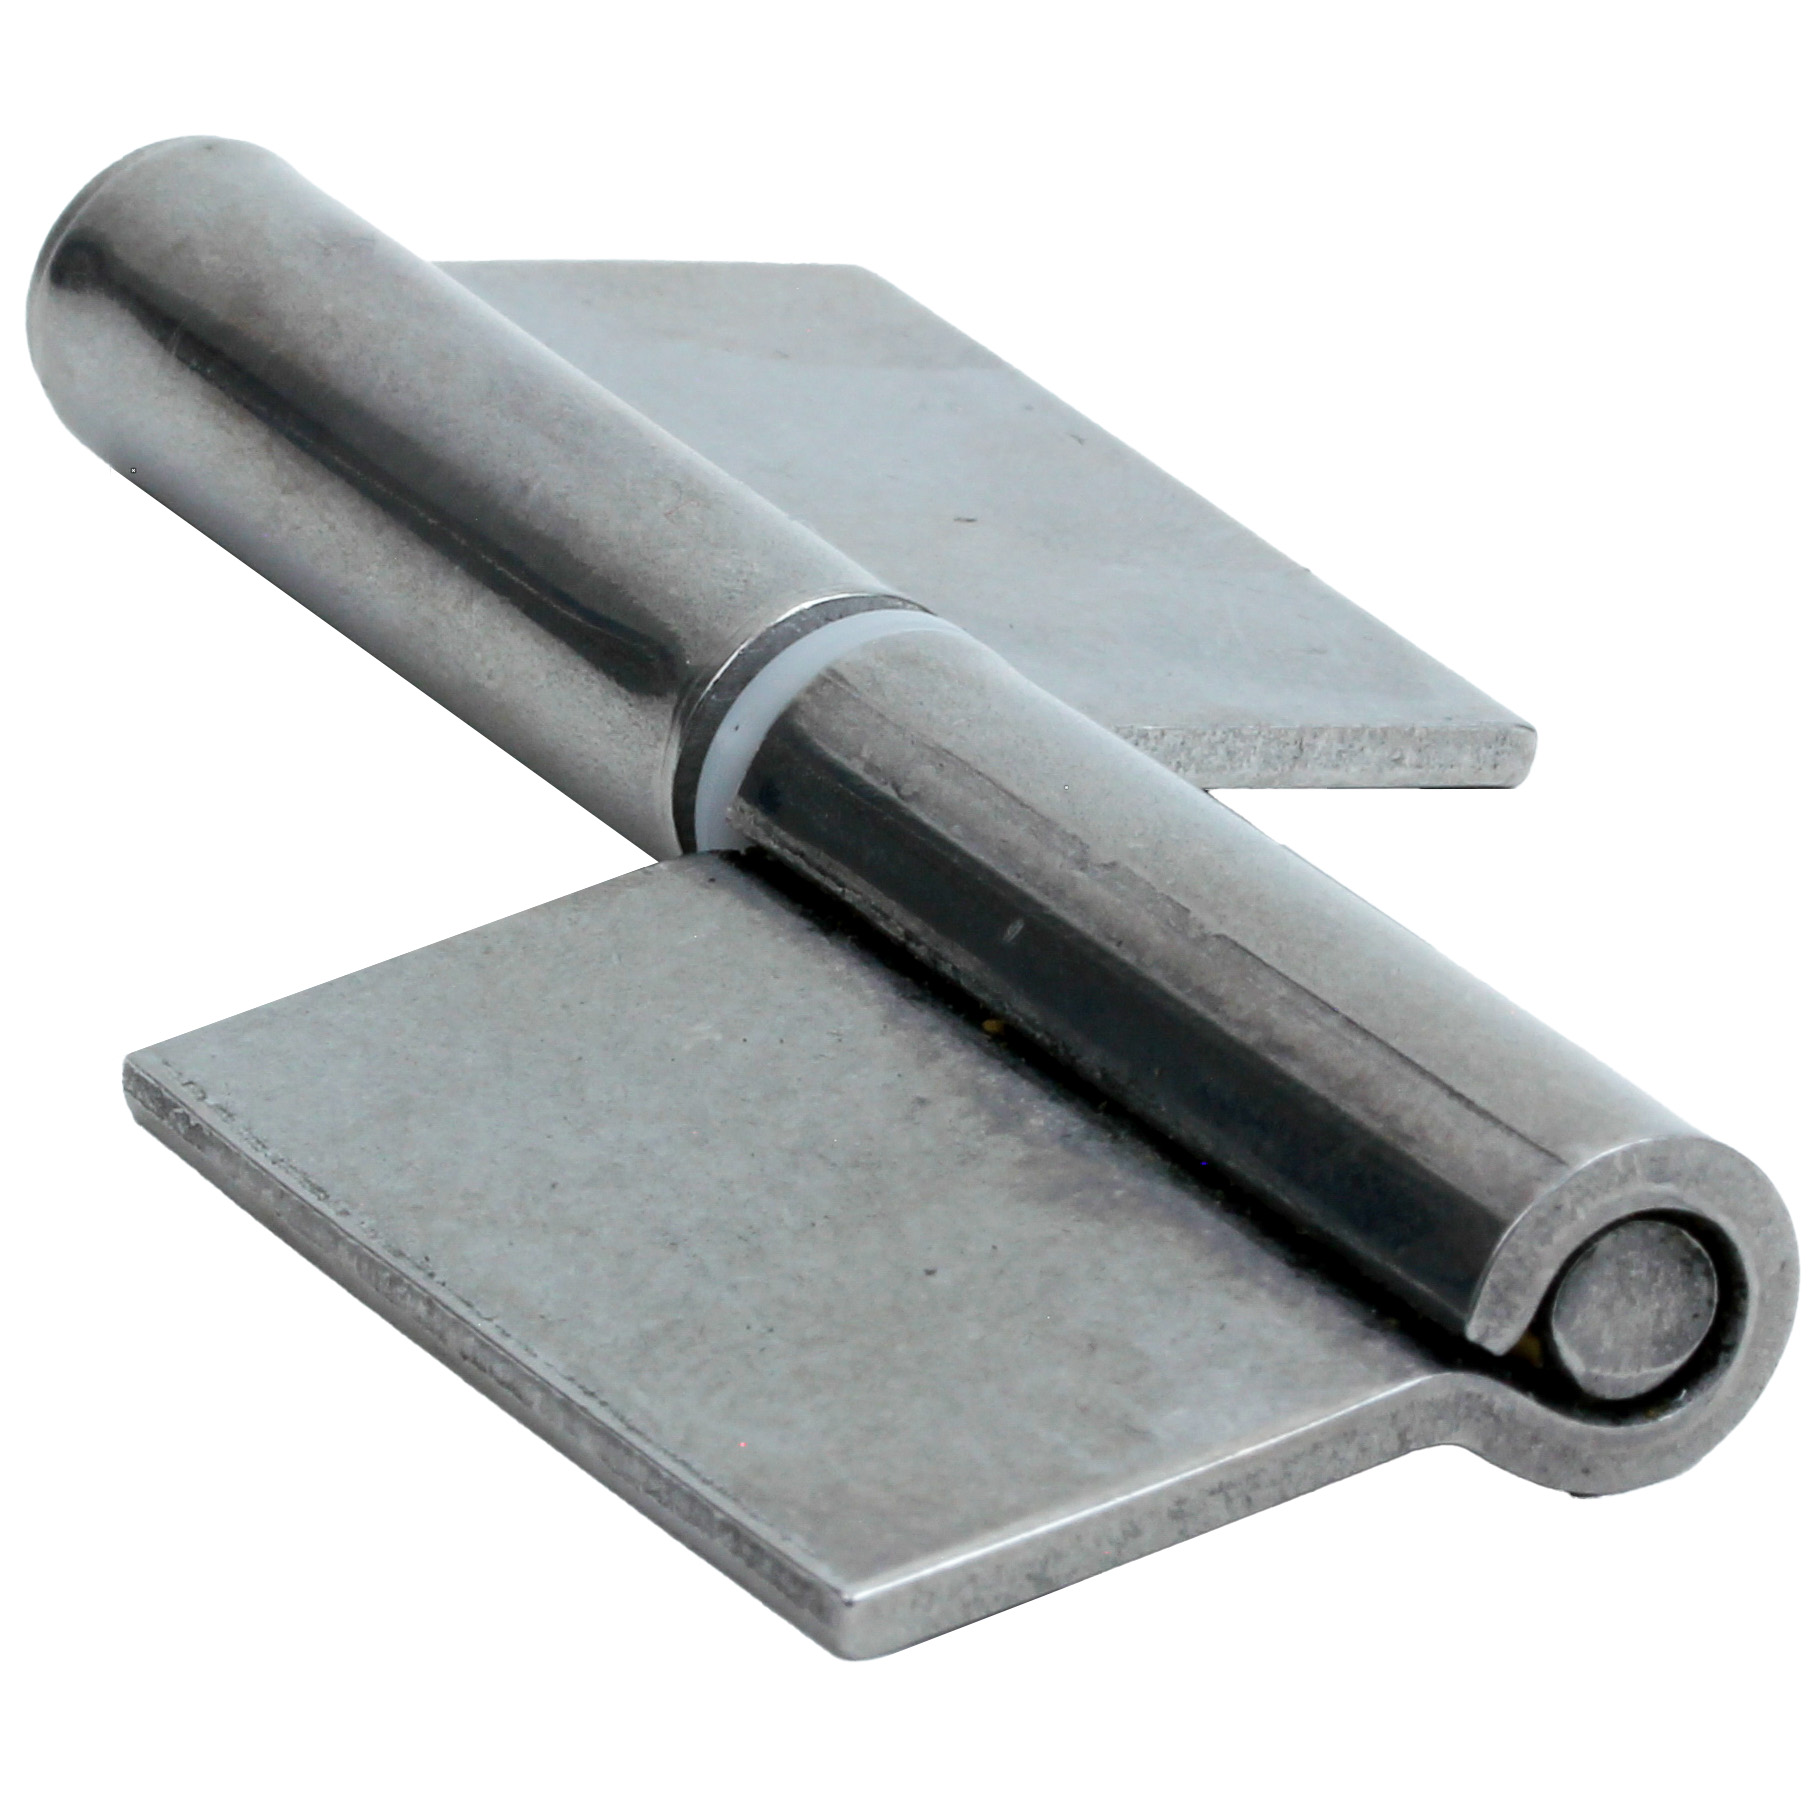 Stainless steel garnet hinge - To be welded - Garnet - Centered